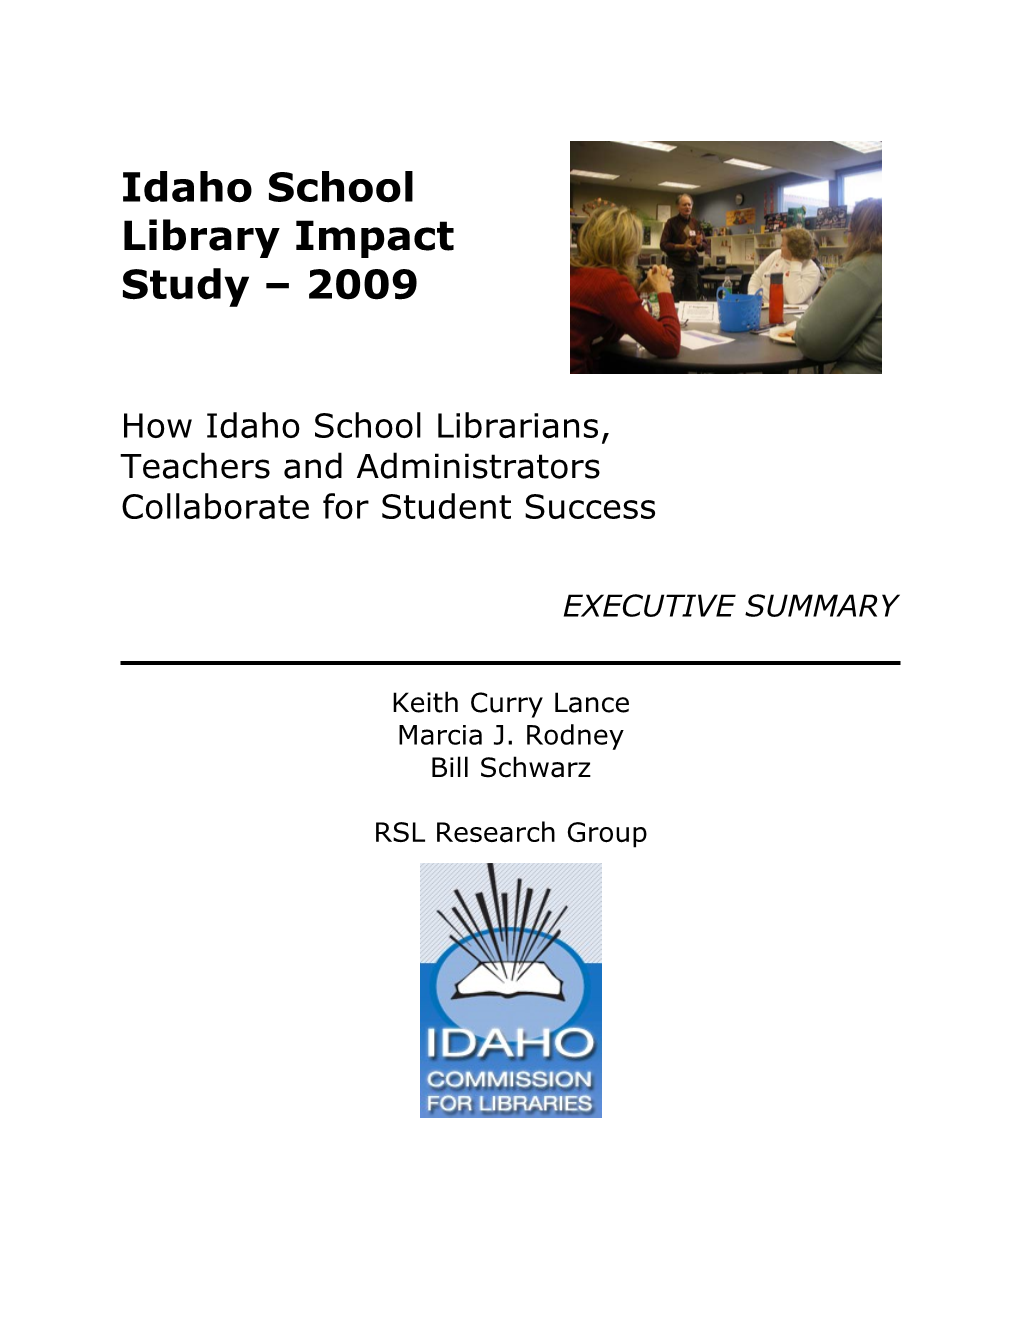 Idaho School Library Impact Study 2009